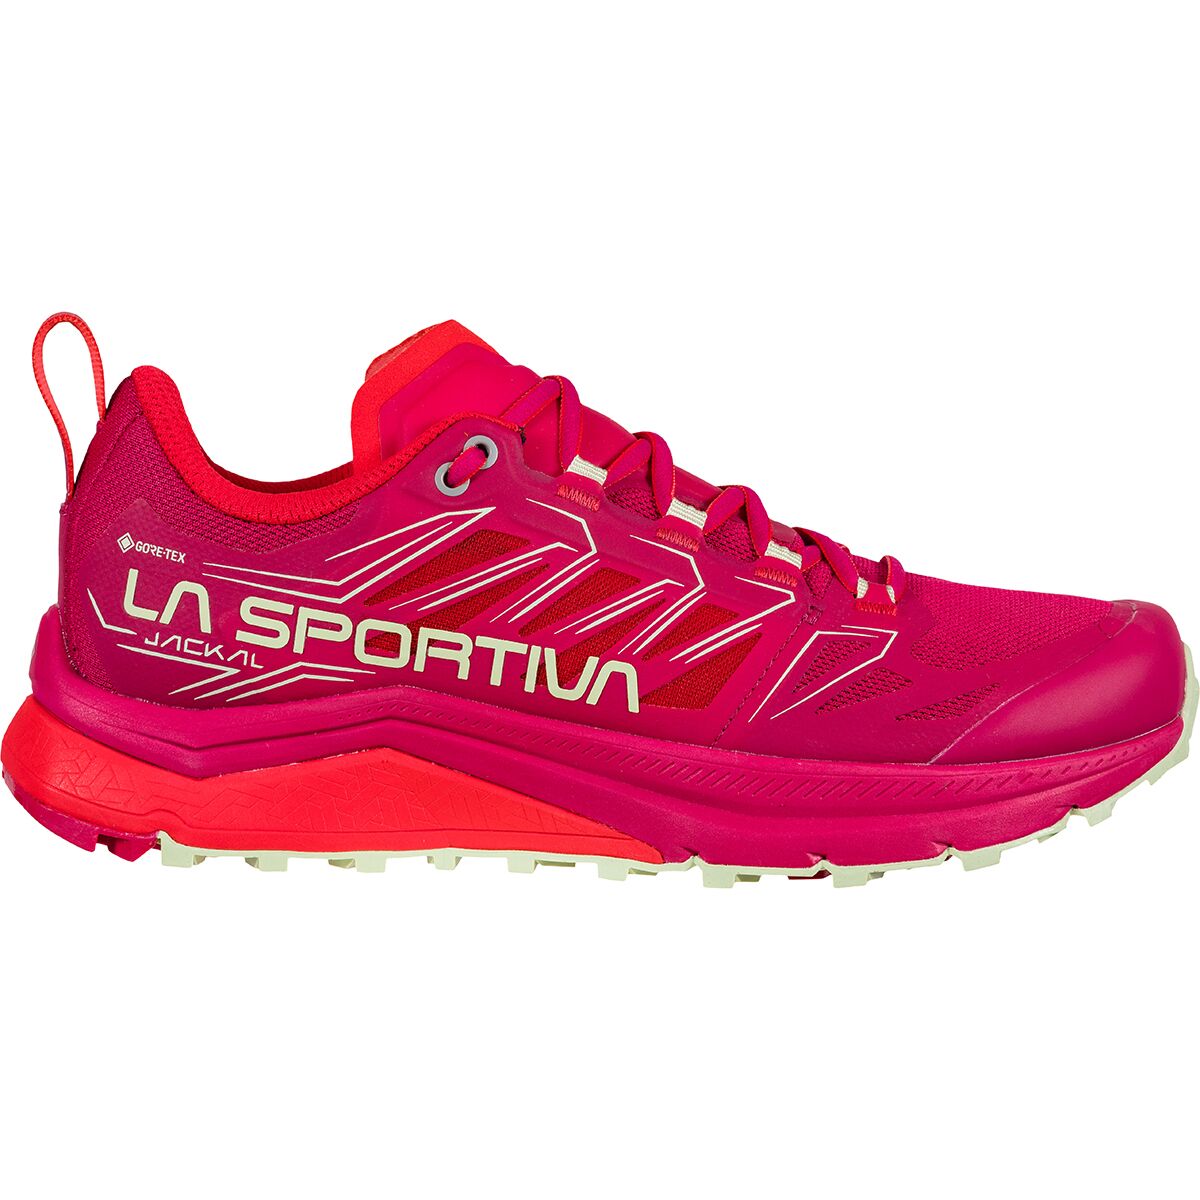 La Sportiva Jackal GTX Trail Running Shoe - Women's